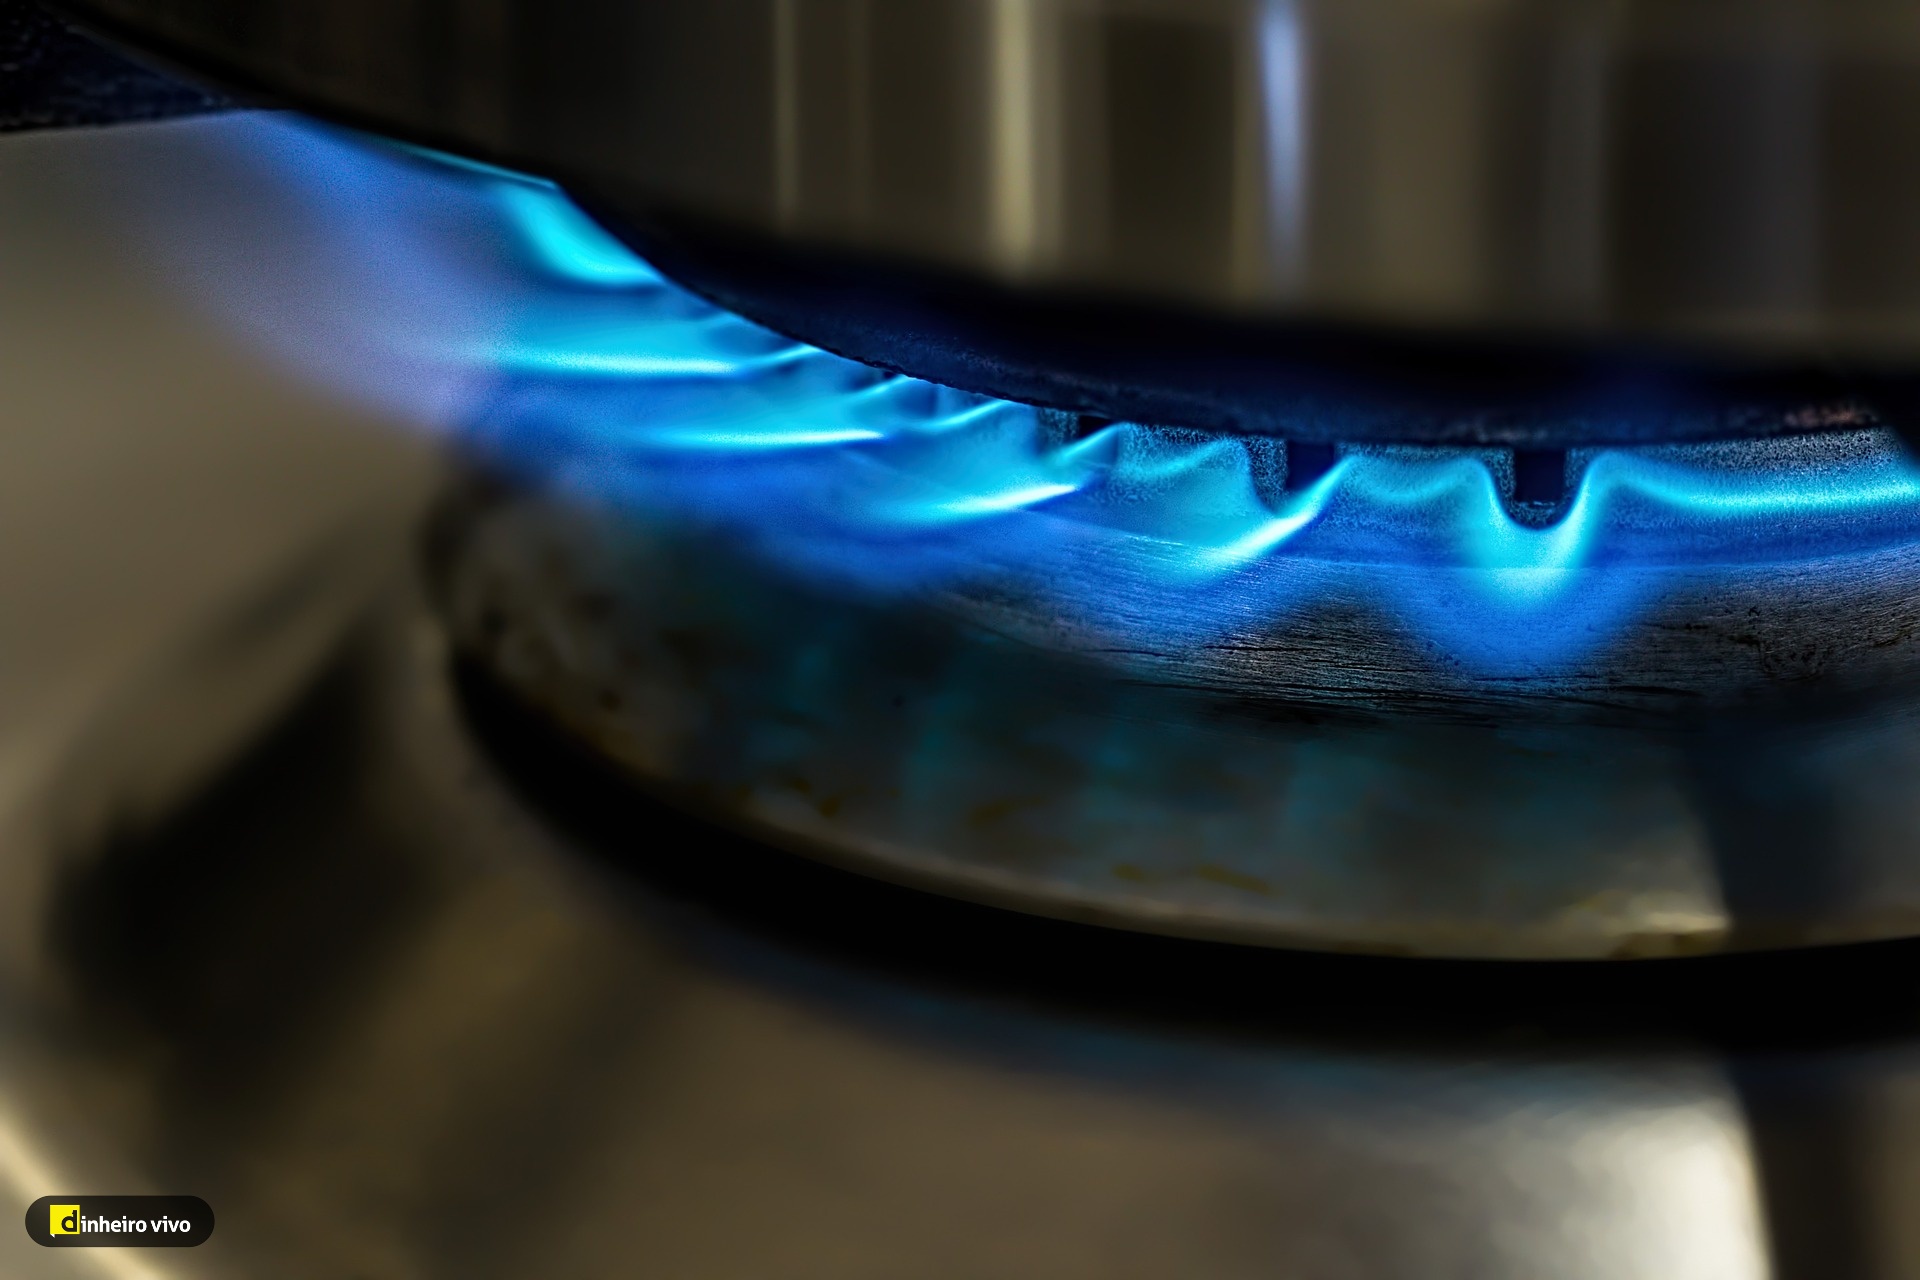 Outubro traz menos 6,8% no termo fixo do gás, mas faturas não baixam assim tanto